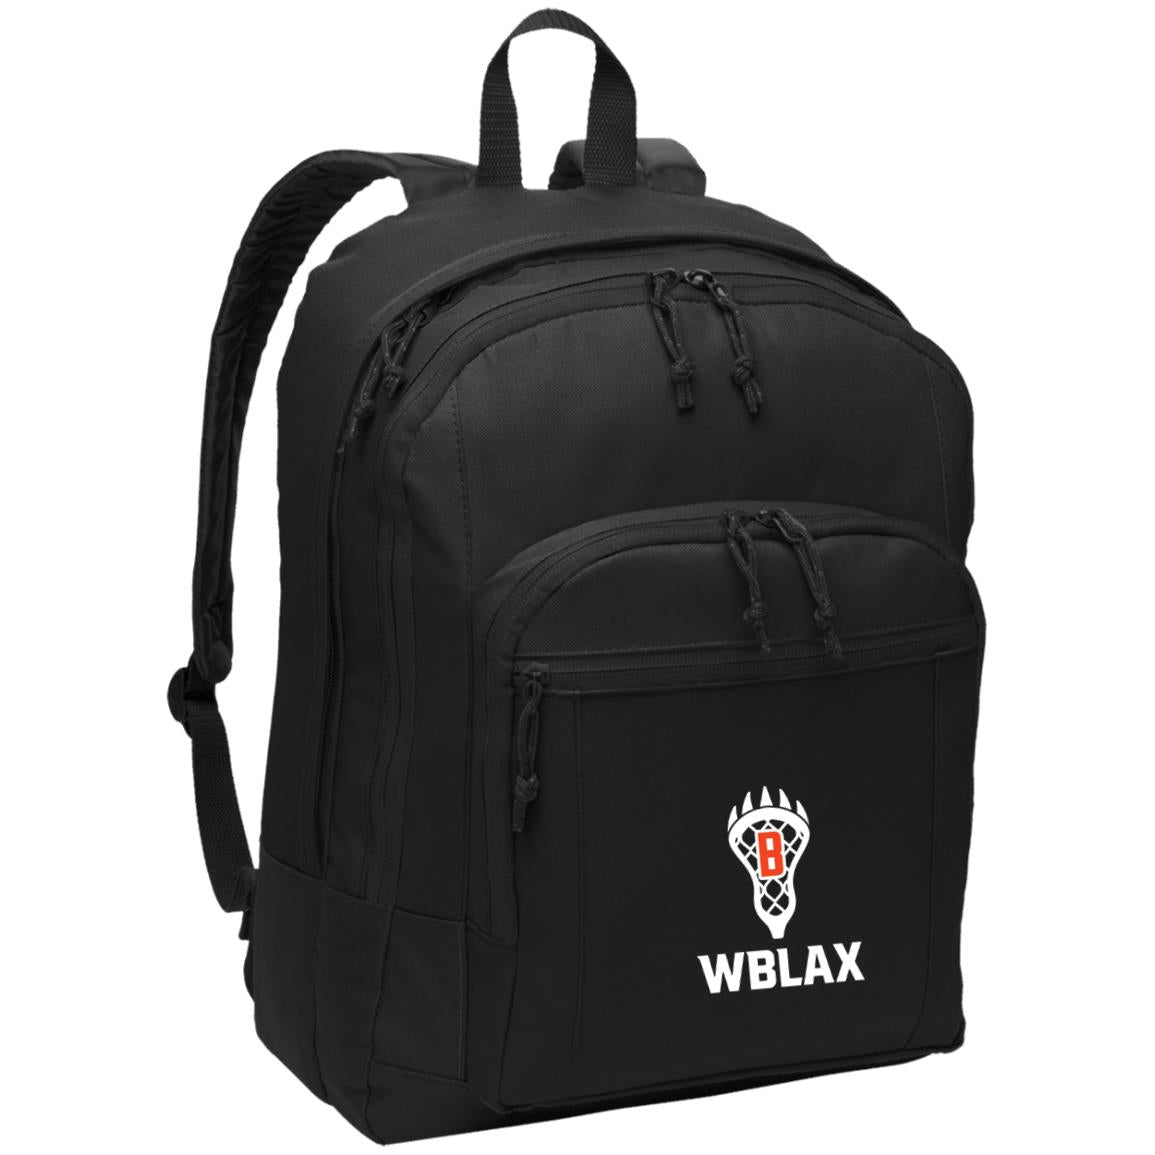 WBLAX Backpack